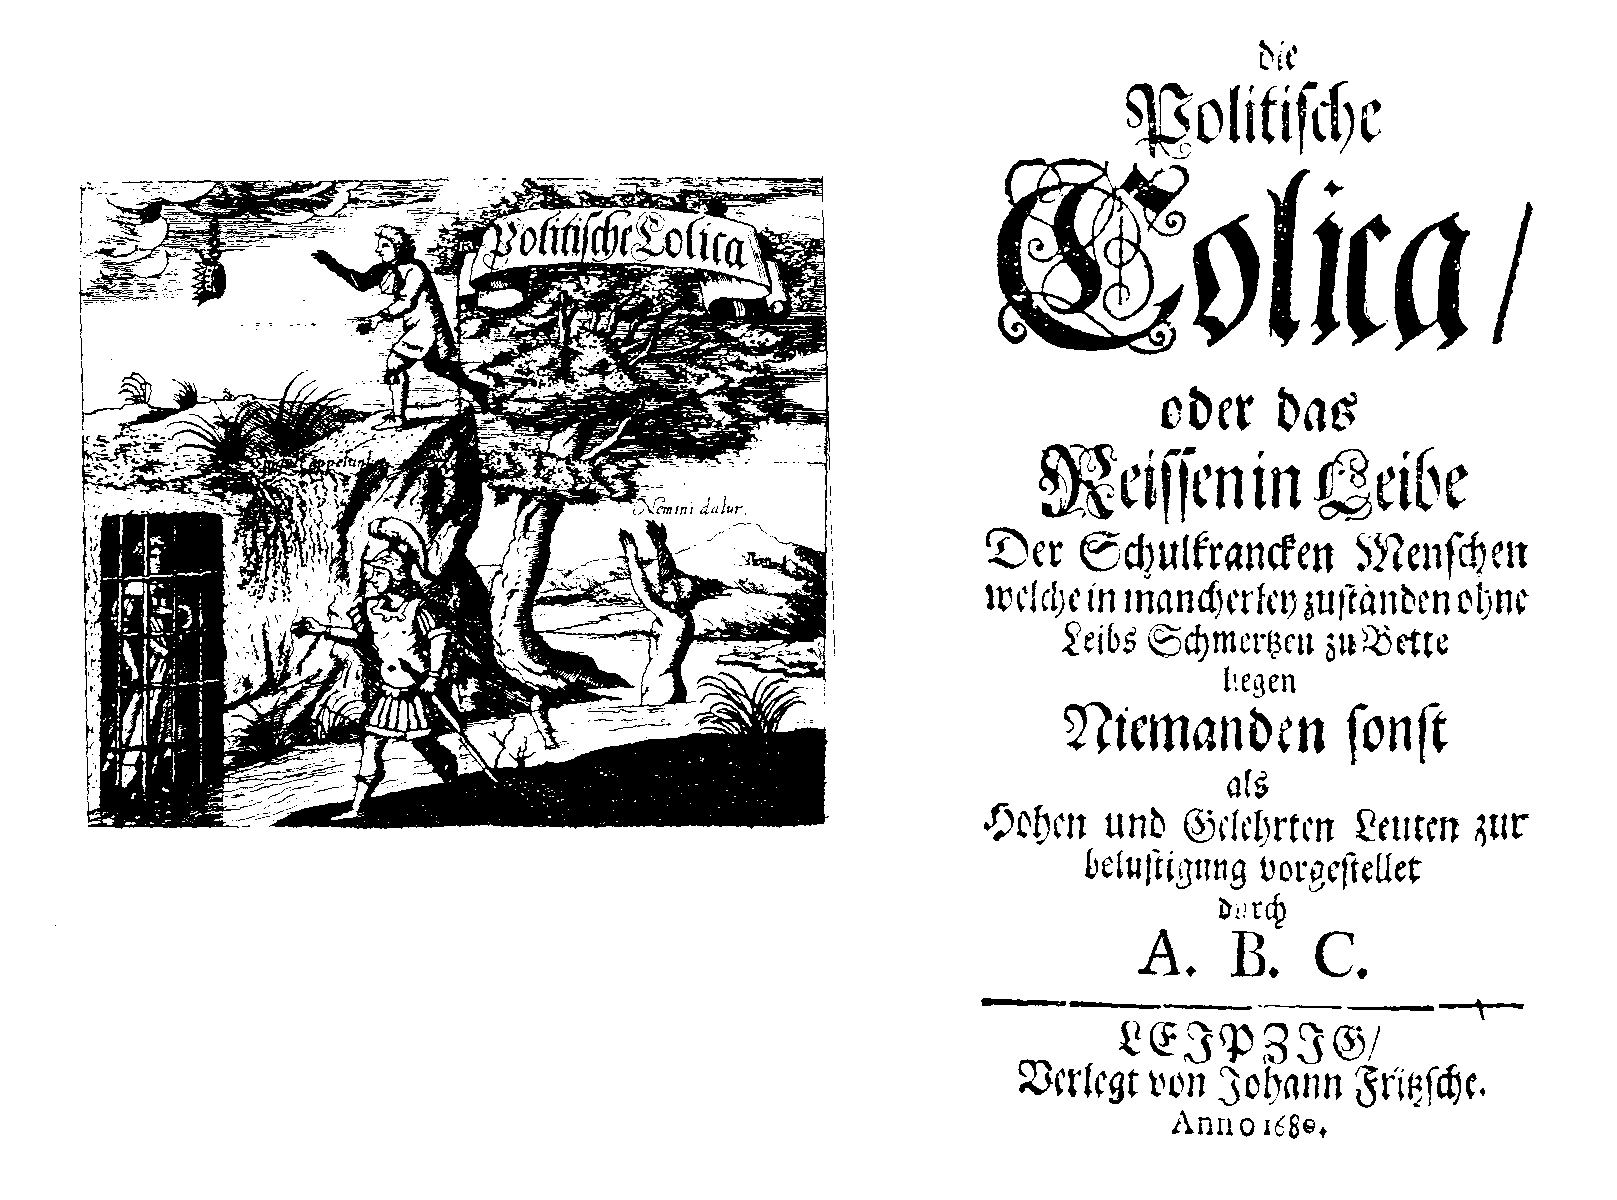 A. B. C., Die Politische Colica, oder das Reissen in Leibe (Leipzig: Joh. Fritz, 1680).